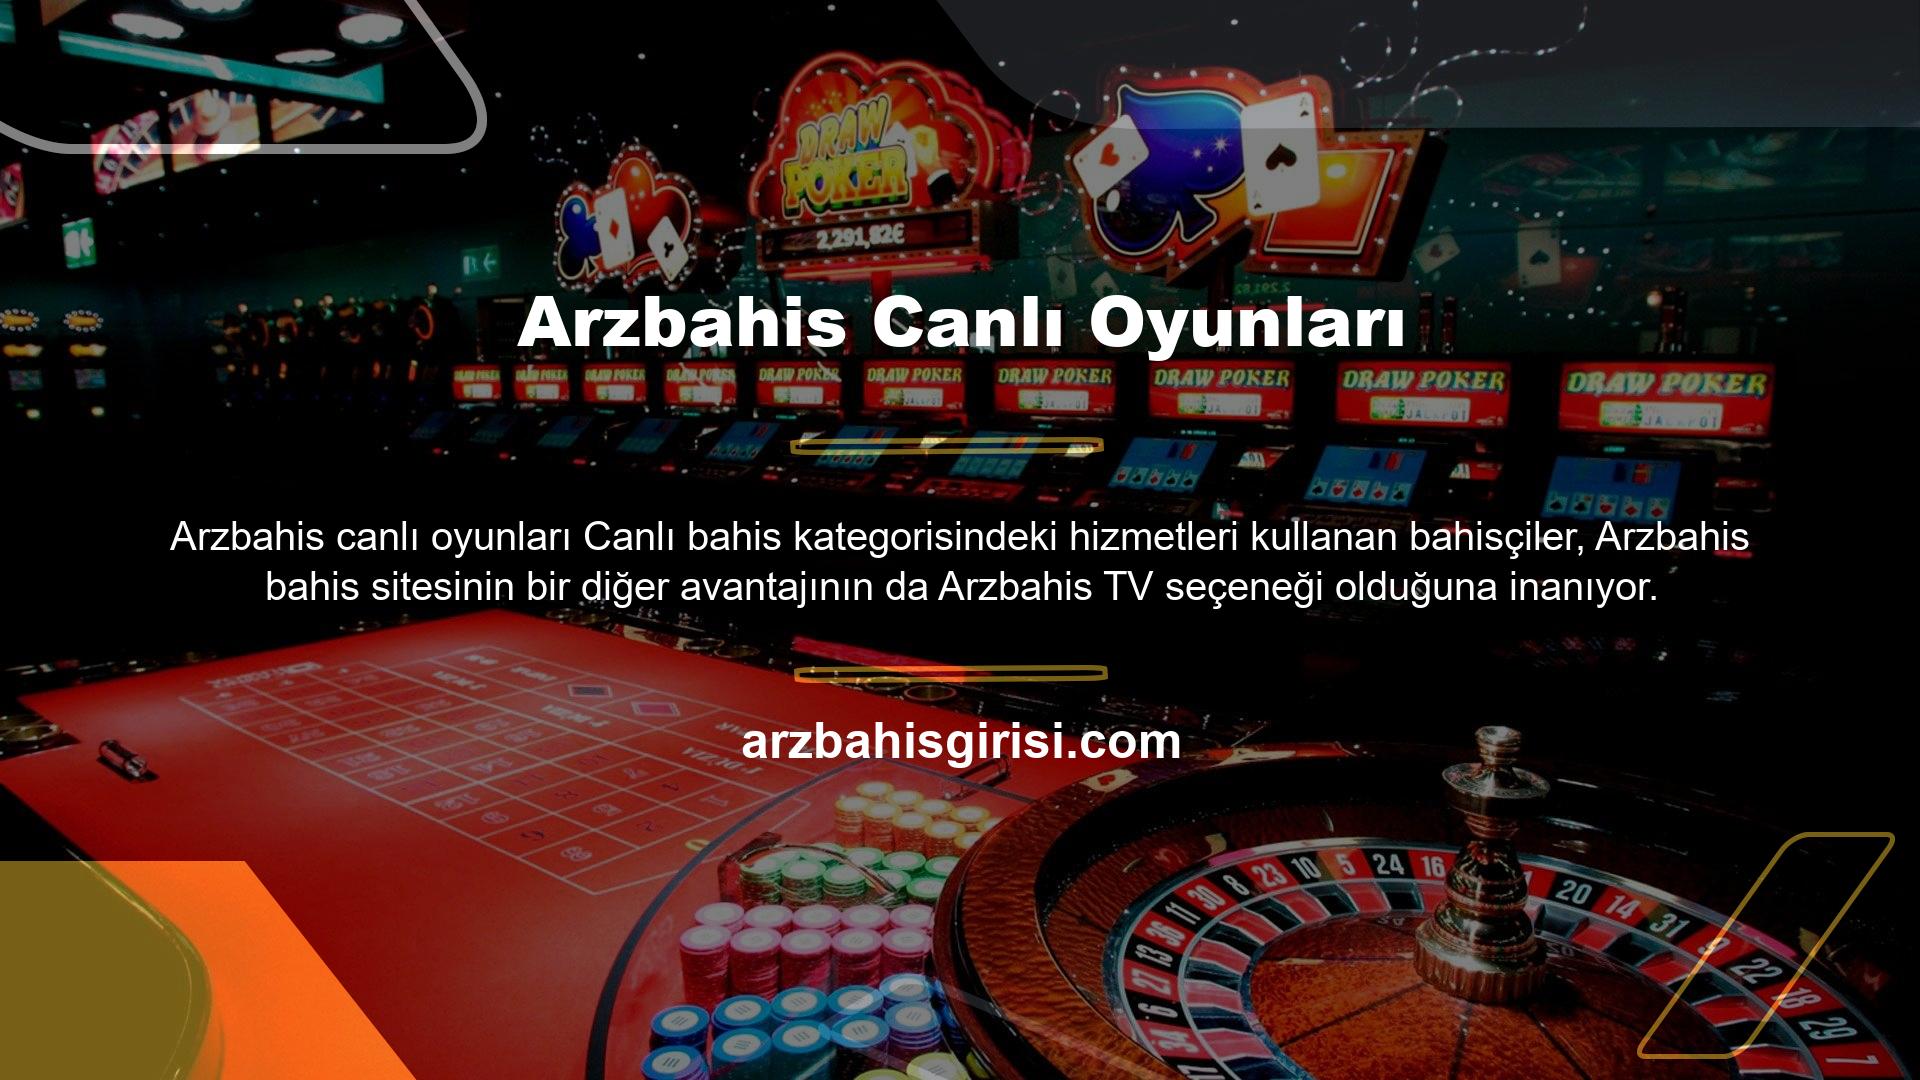 Canlı maç izleme seçeneği ile Arzbahis TV üzerinden tüm maçları kolayca takip edebilirsiniz